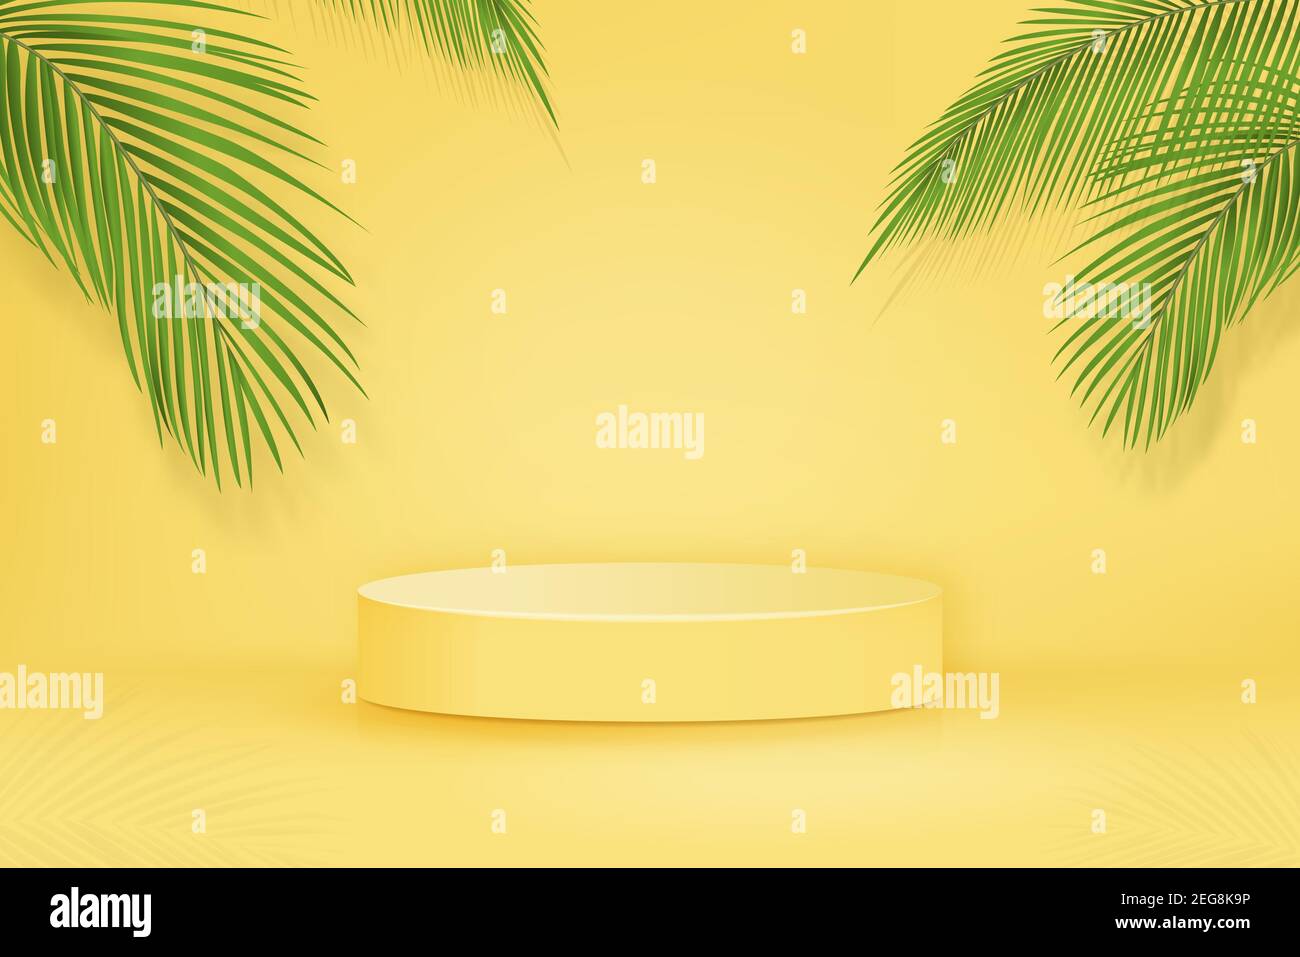 3D palco podio mockup su sfondo giallo con foglie di palma per il posizionamento di cibo e prodotti in concetti tropicali, illustrazione vettoriale Illustrazione Vettoriale